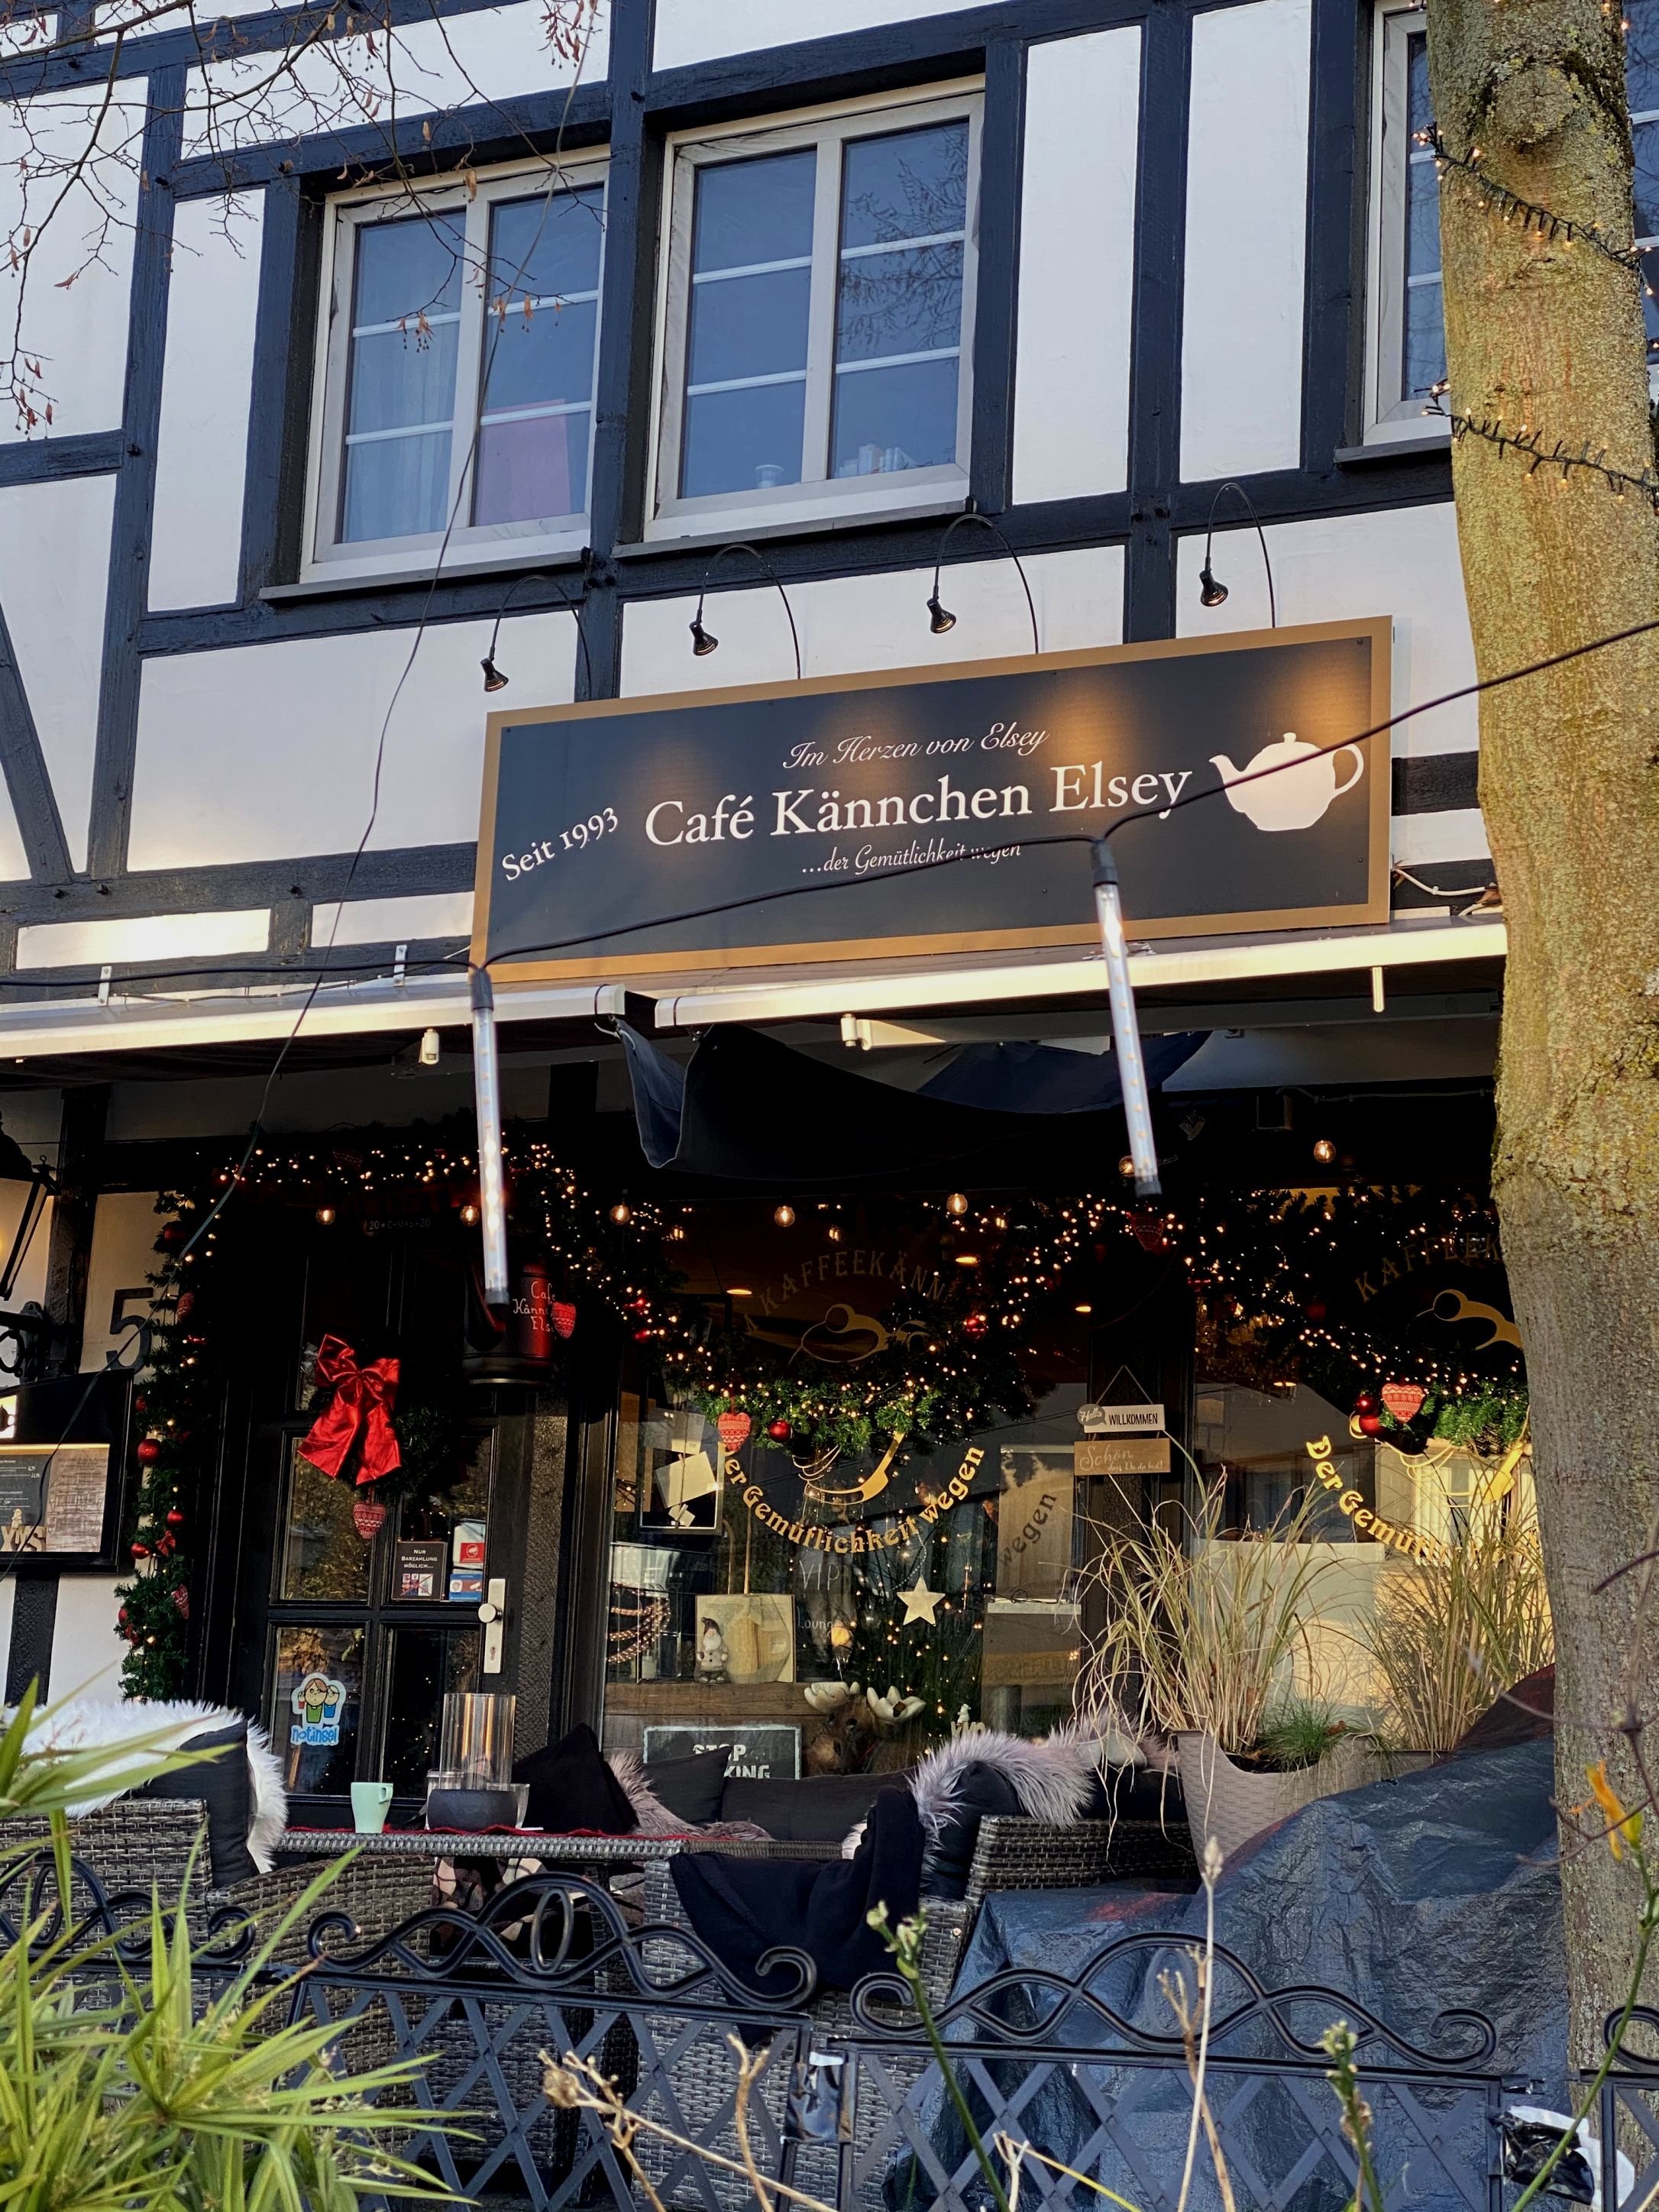 Café Kännchen Elsey